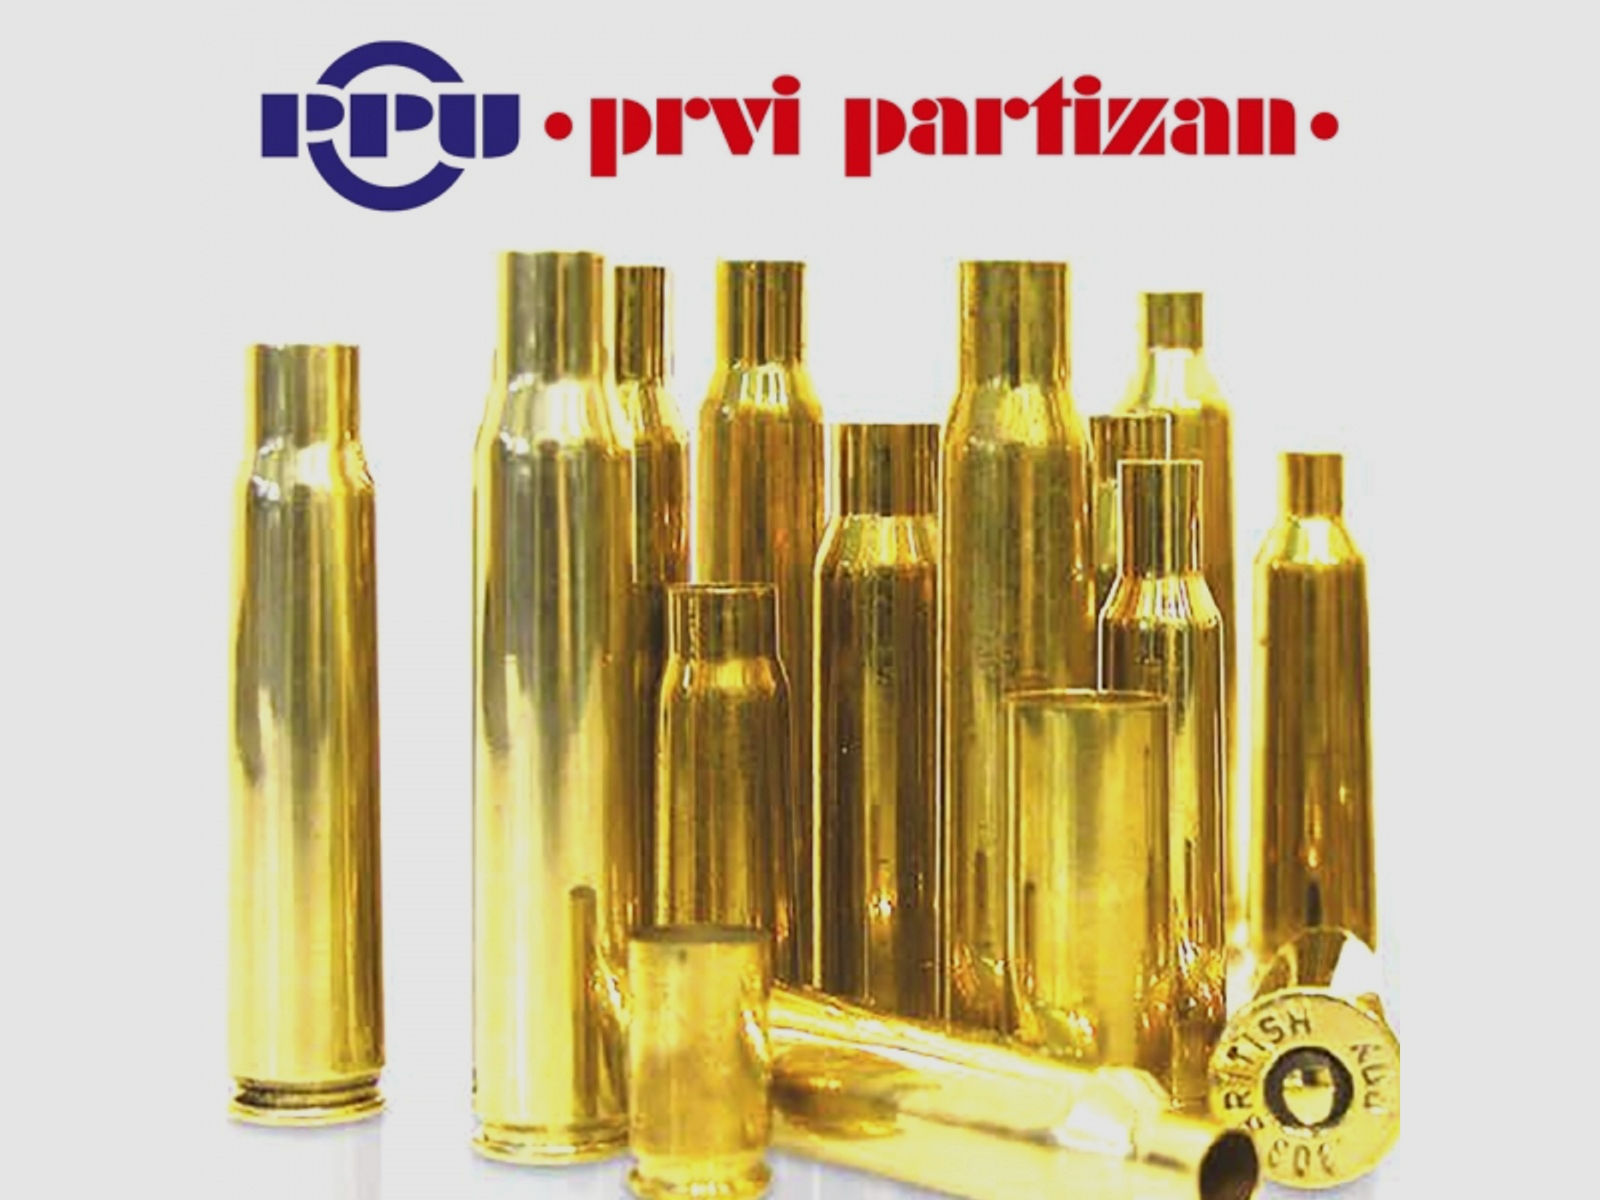 50 Stück NEUE PPU/PrviPartizan Langwaffenhülsen 8x60 S (Boxerzündung)/Unprimed Brass #C474